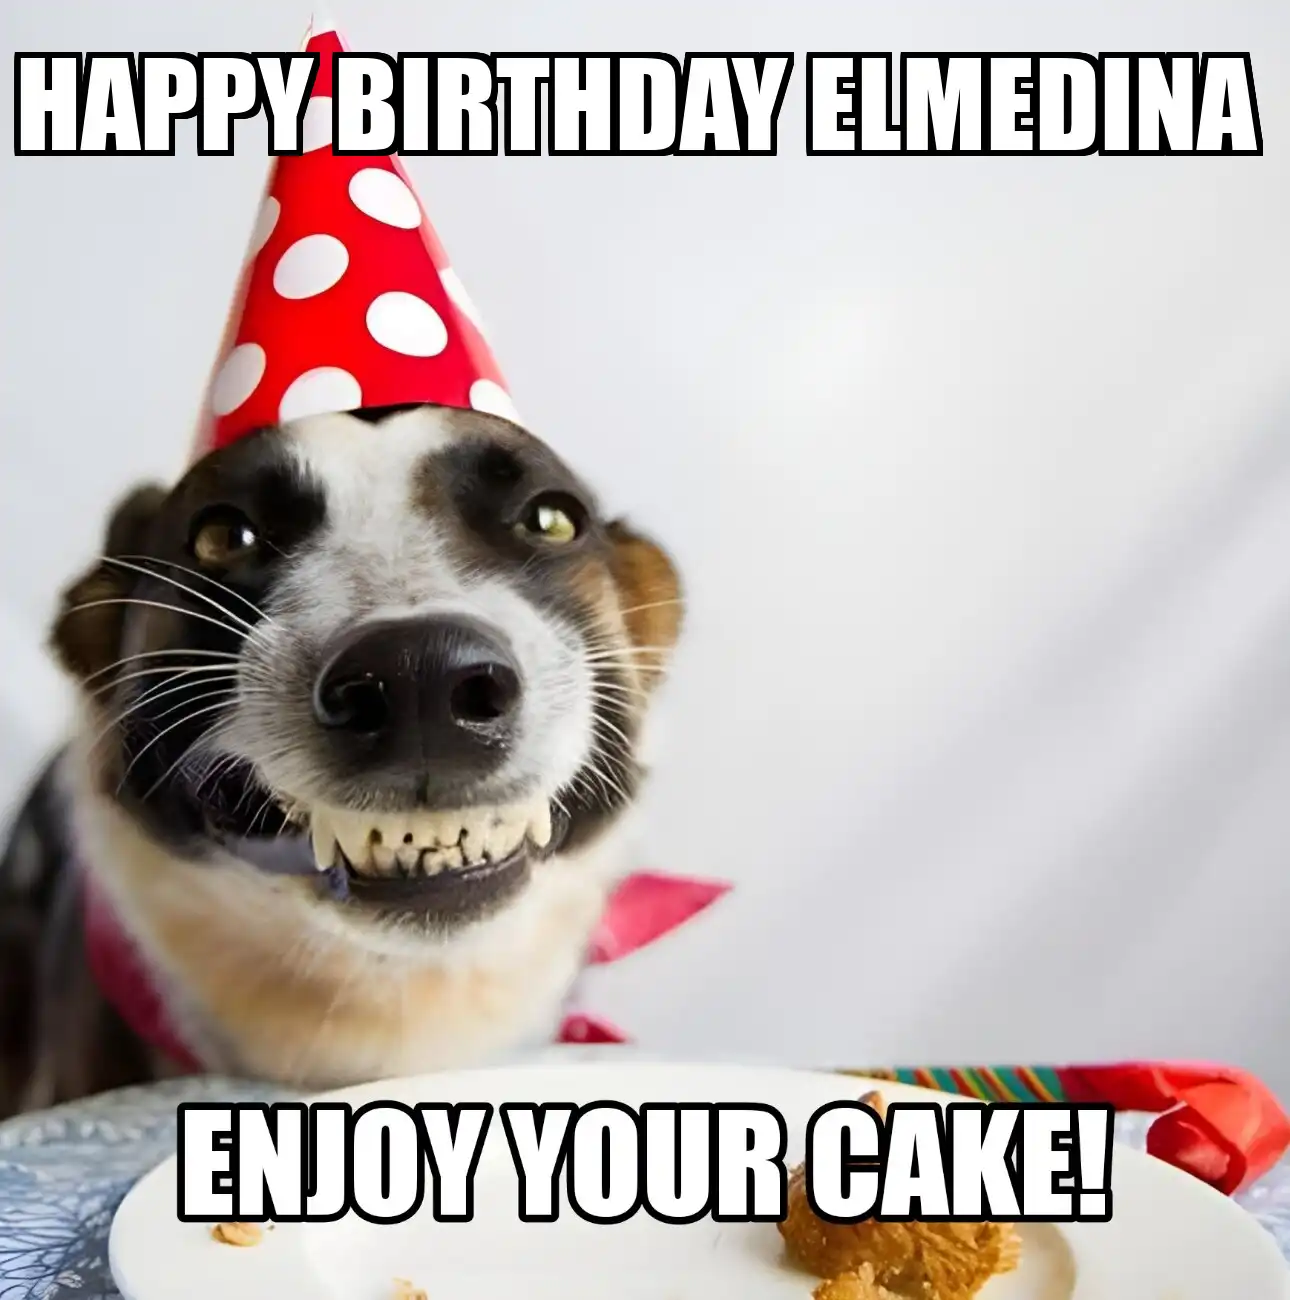 Happy Birthday Elmedina Enjoy Your Cake Dog Meme